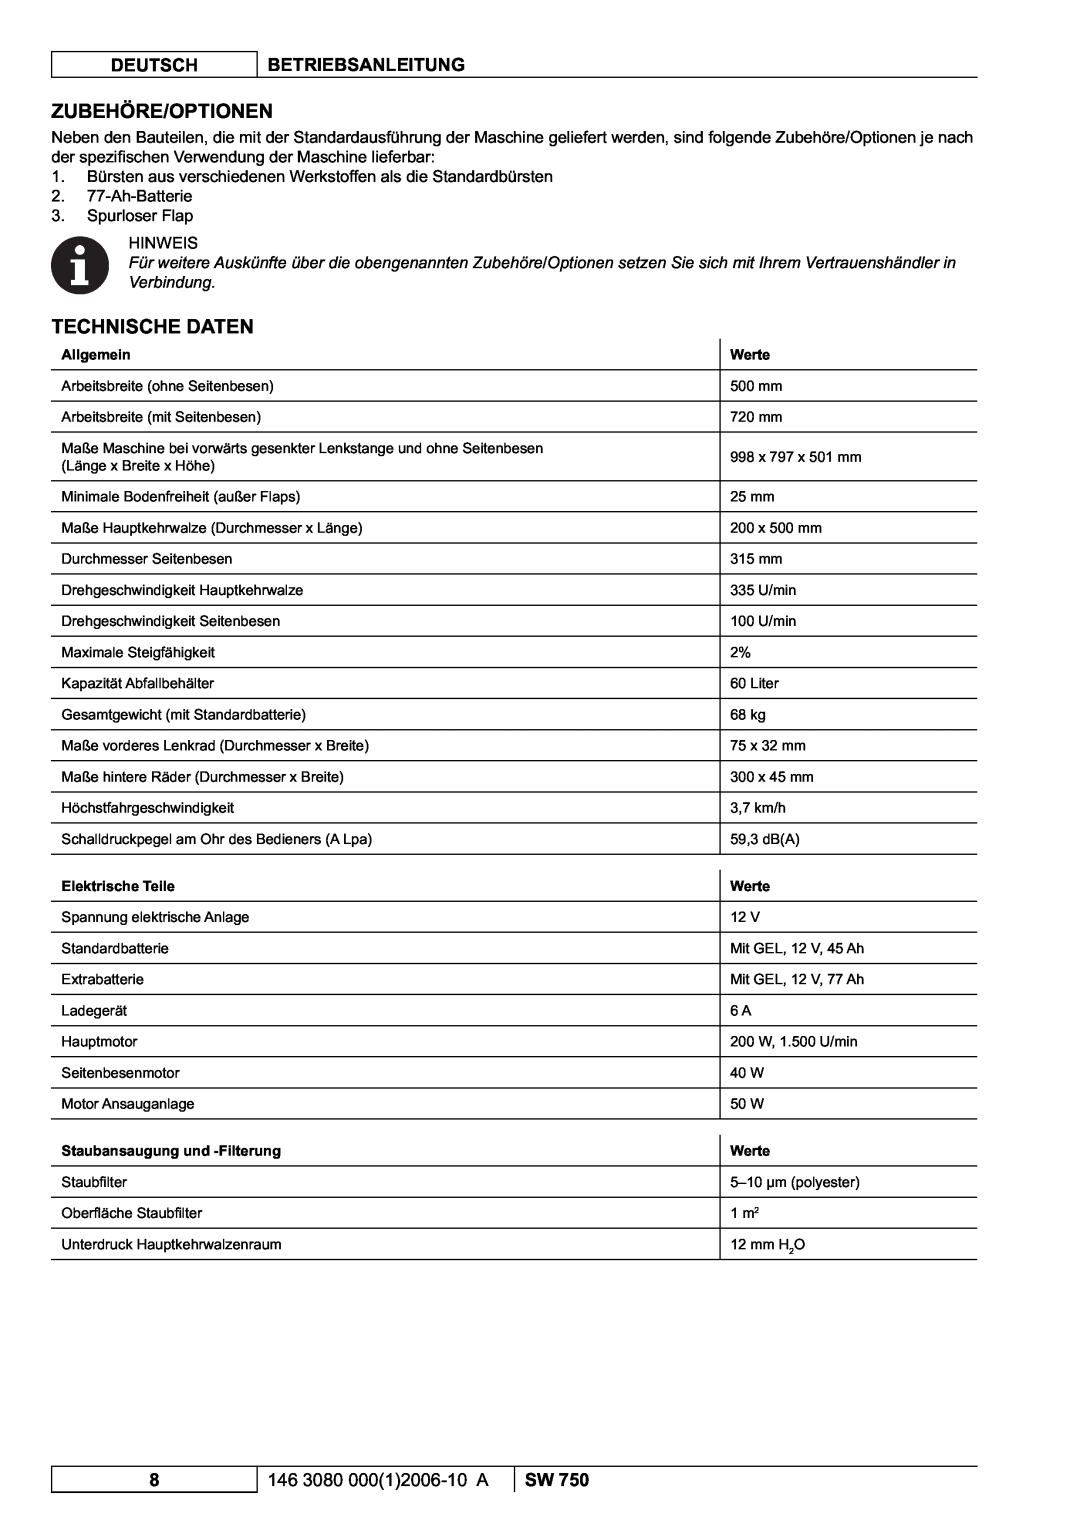 Nilfisk-ALTO SW 750 manuel dutilisation Zubehöre/Optionen, Technische Daten, Deutsch, Betriebsanleitung 